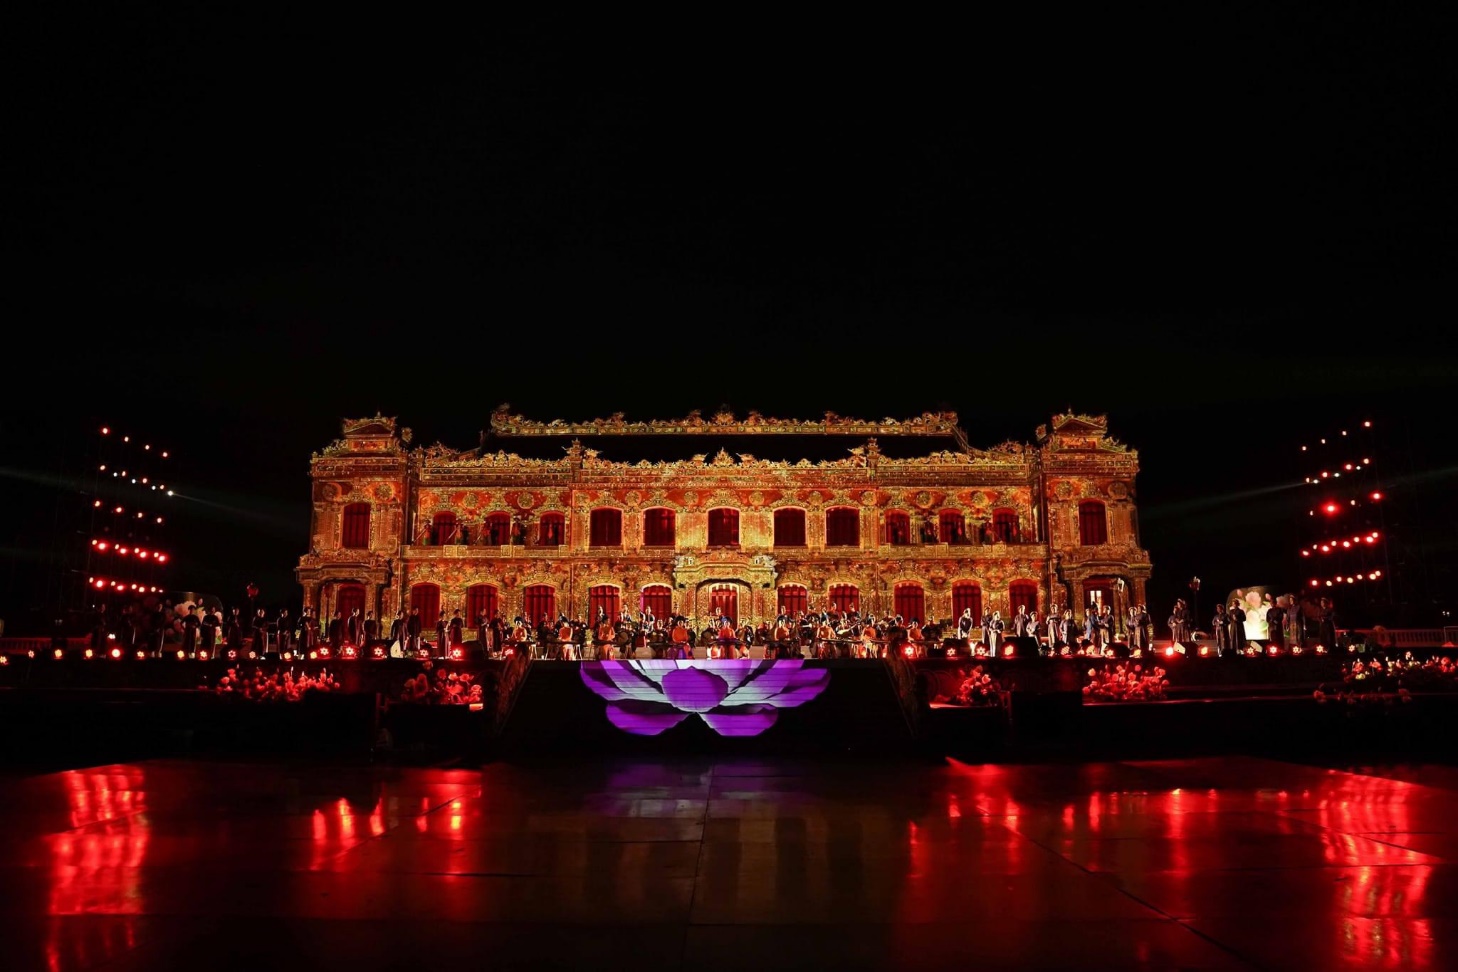 Chiêm ngưỡng cung điện triệu đô lộng lẫy trong đêm khai mạc Tuần lễ Festival Huế - 4